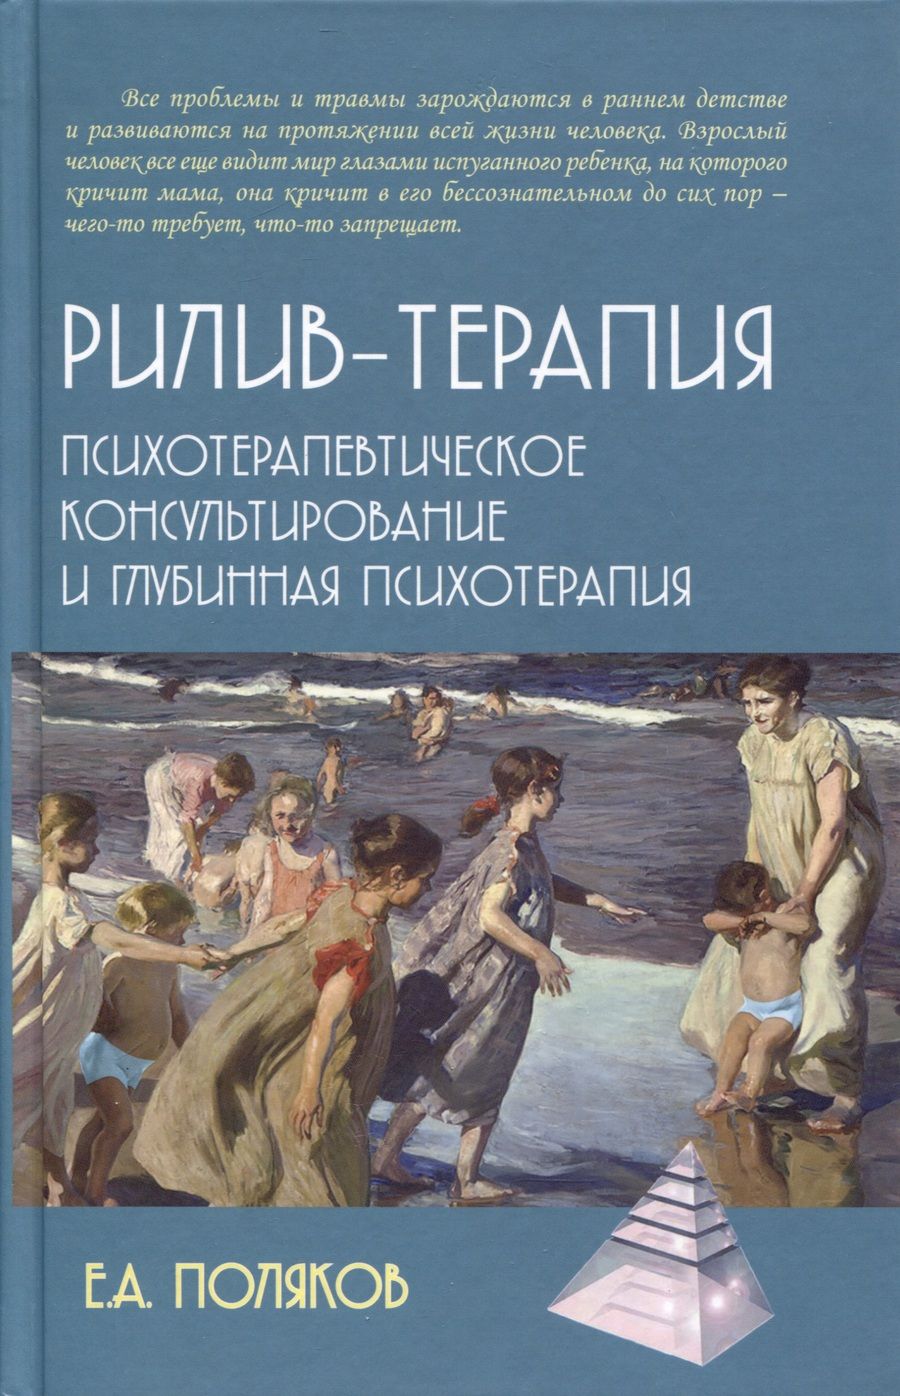 Обложка книги "Поляков: Рилив-терапия. Психотерапевтическое консультирование и глубинная психотерапия"